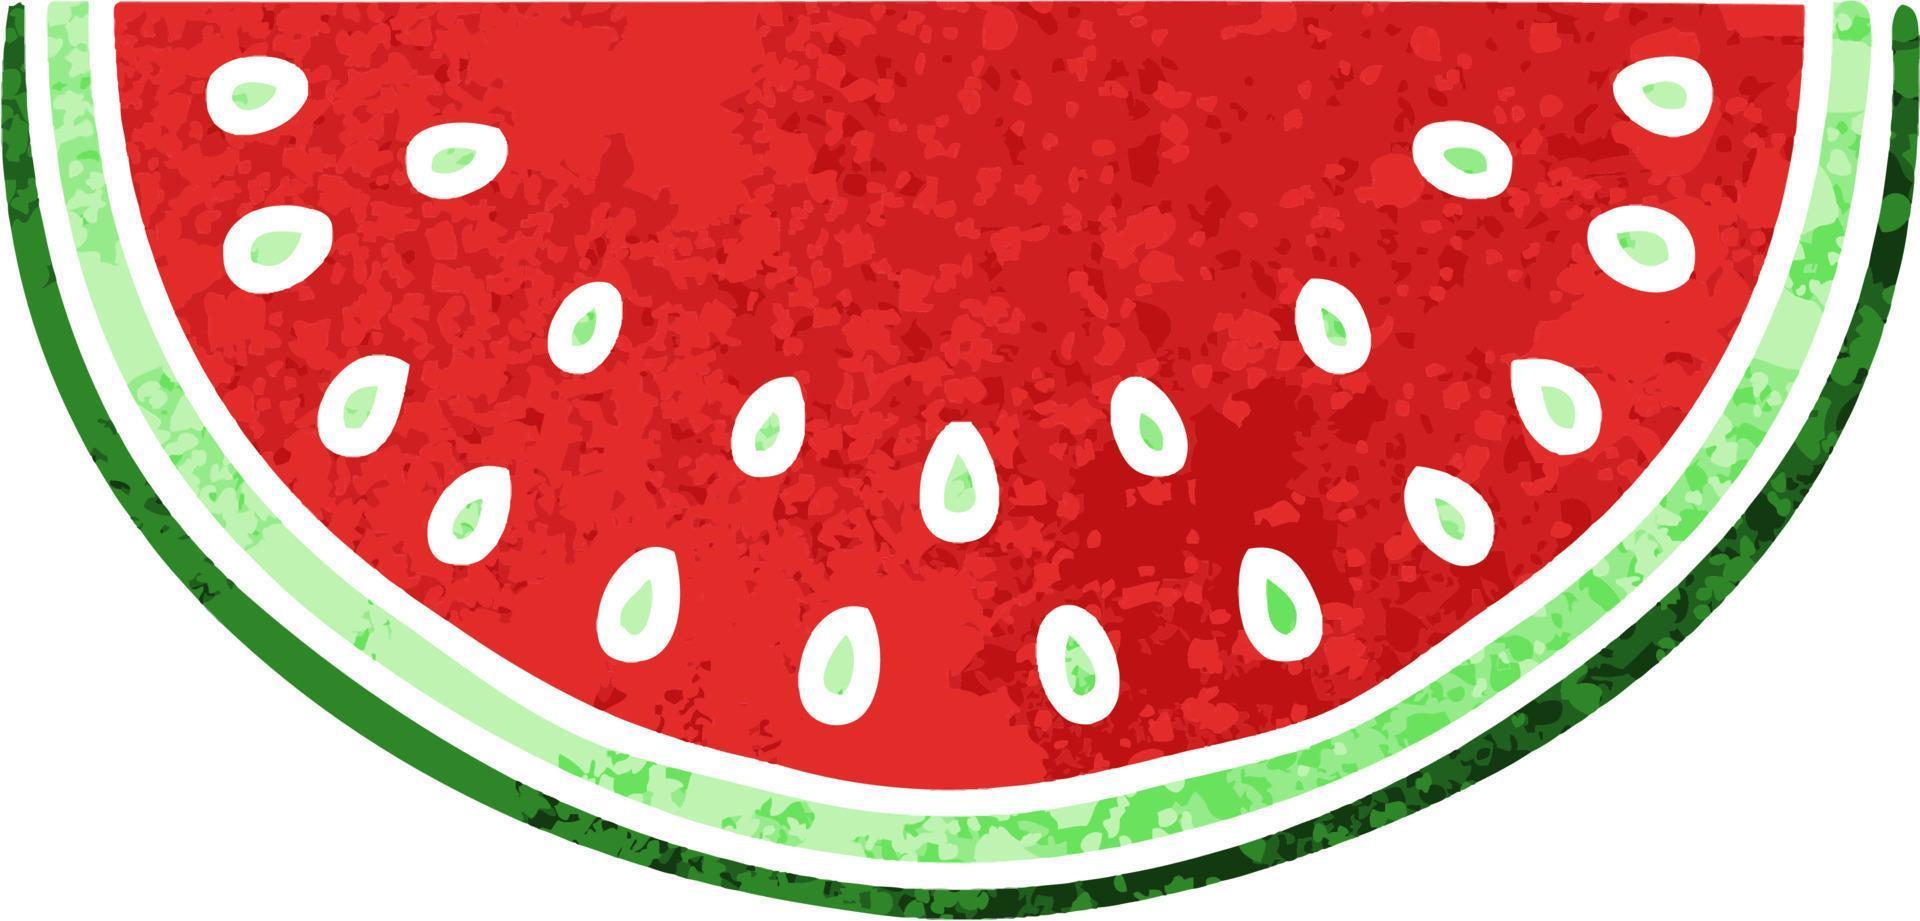 eigenzinnige retro illustratie stijl cartoon watermeloen vector